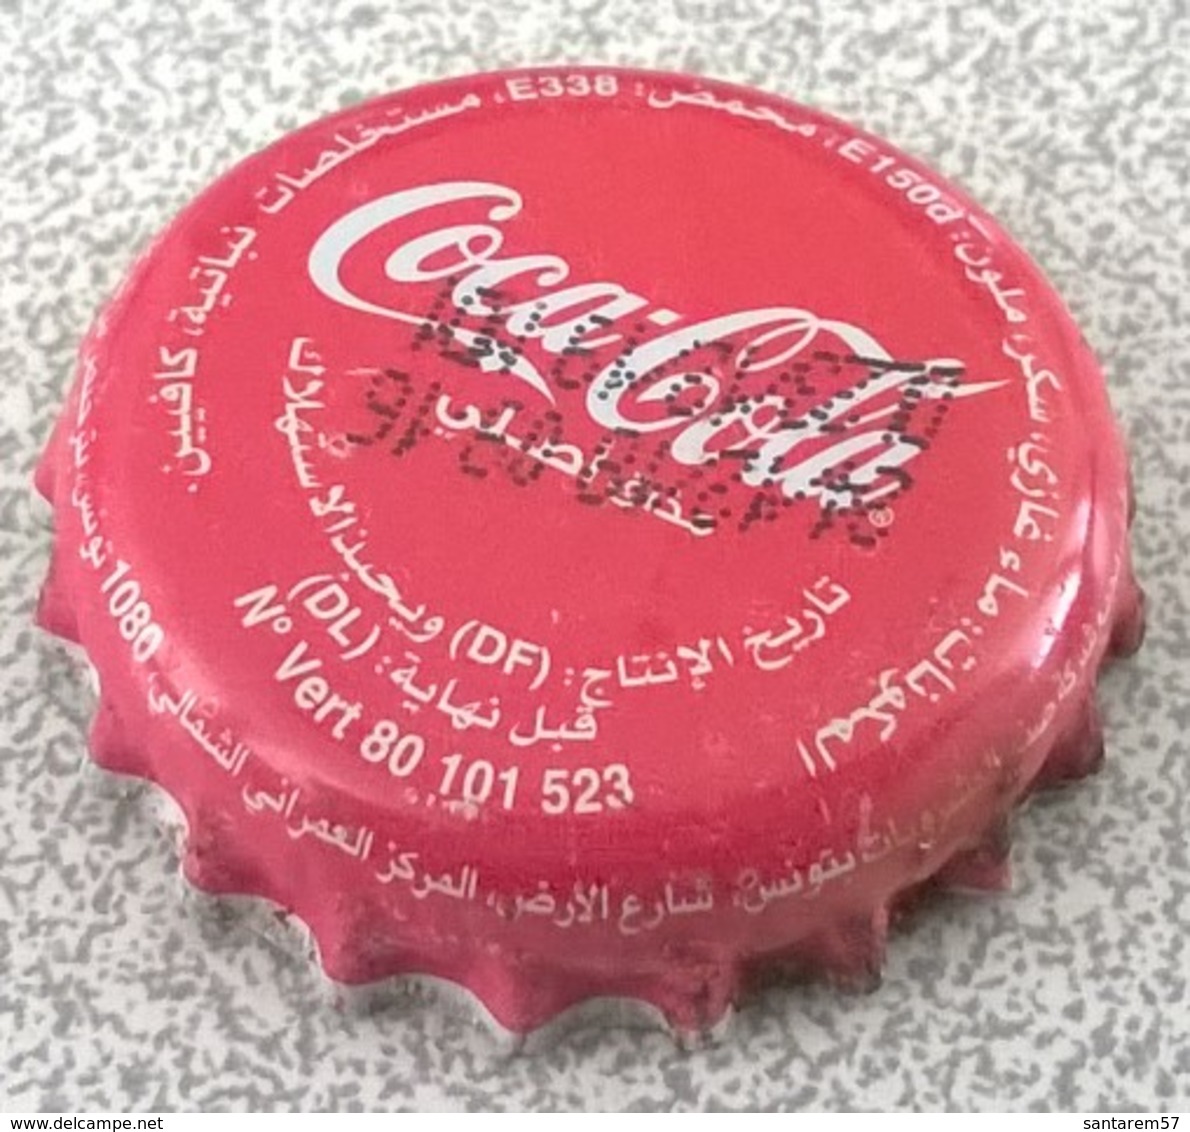 Tunisie Capsule Crown Caps Coca Cola SU - Limonade